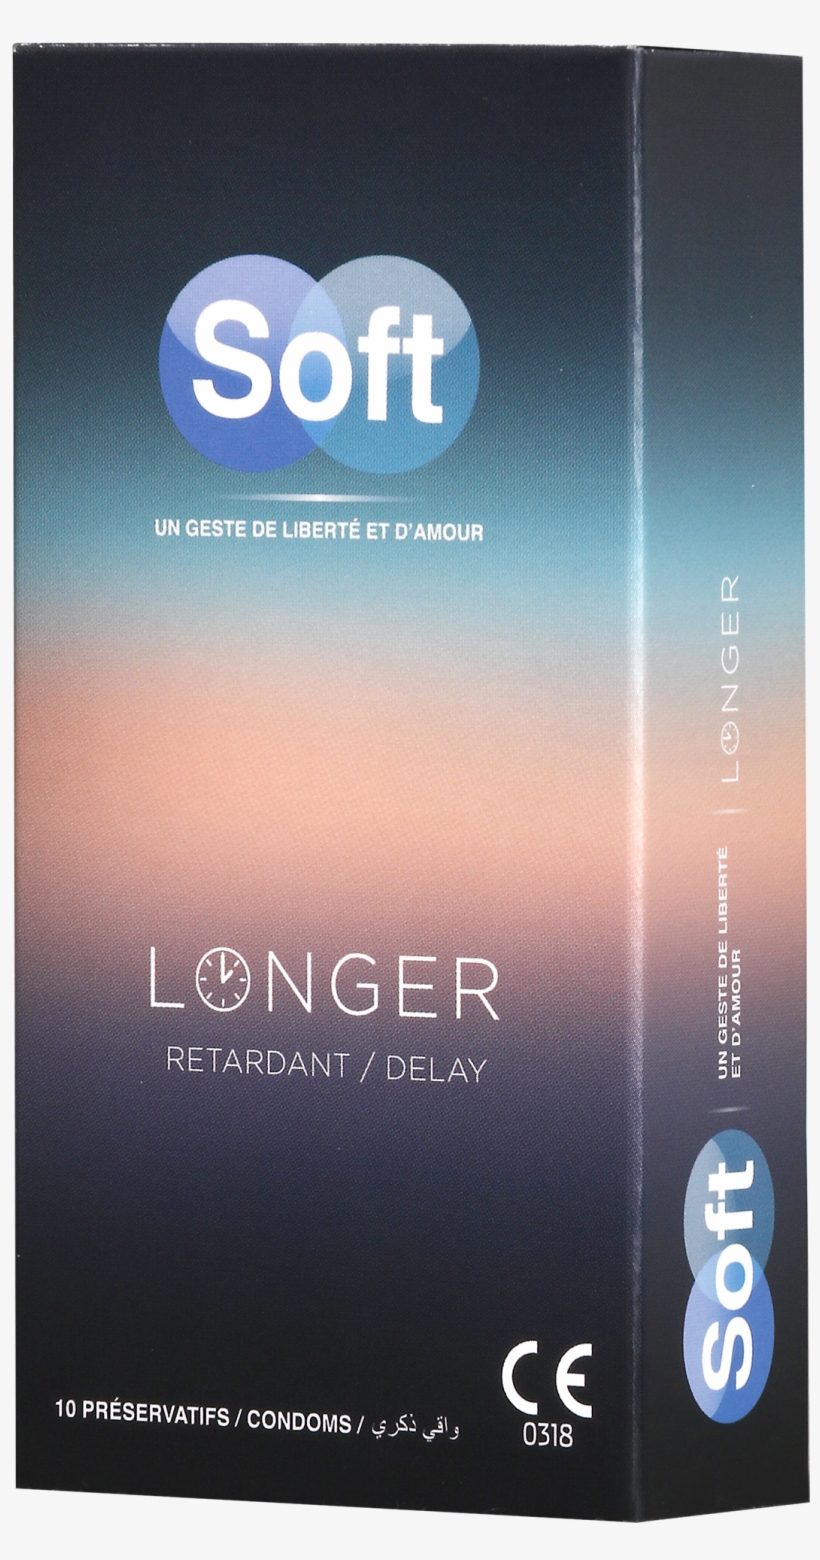 Longer Condom Delay - Male Condom, transparent png #2138520